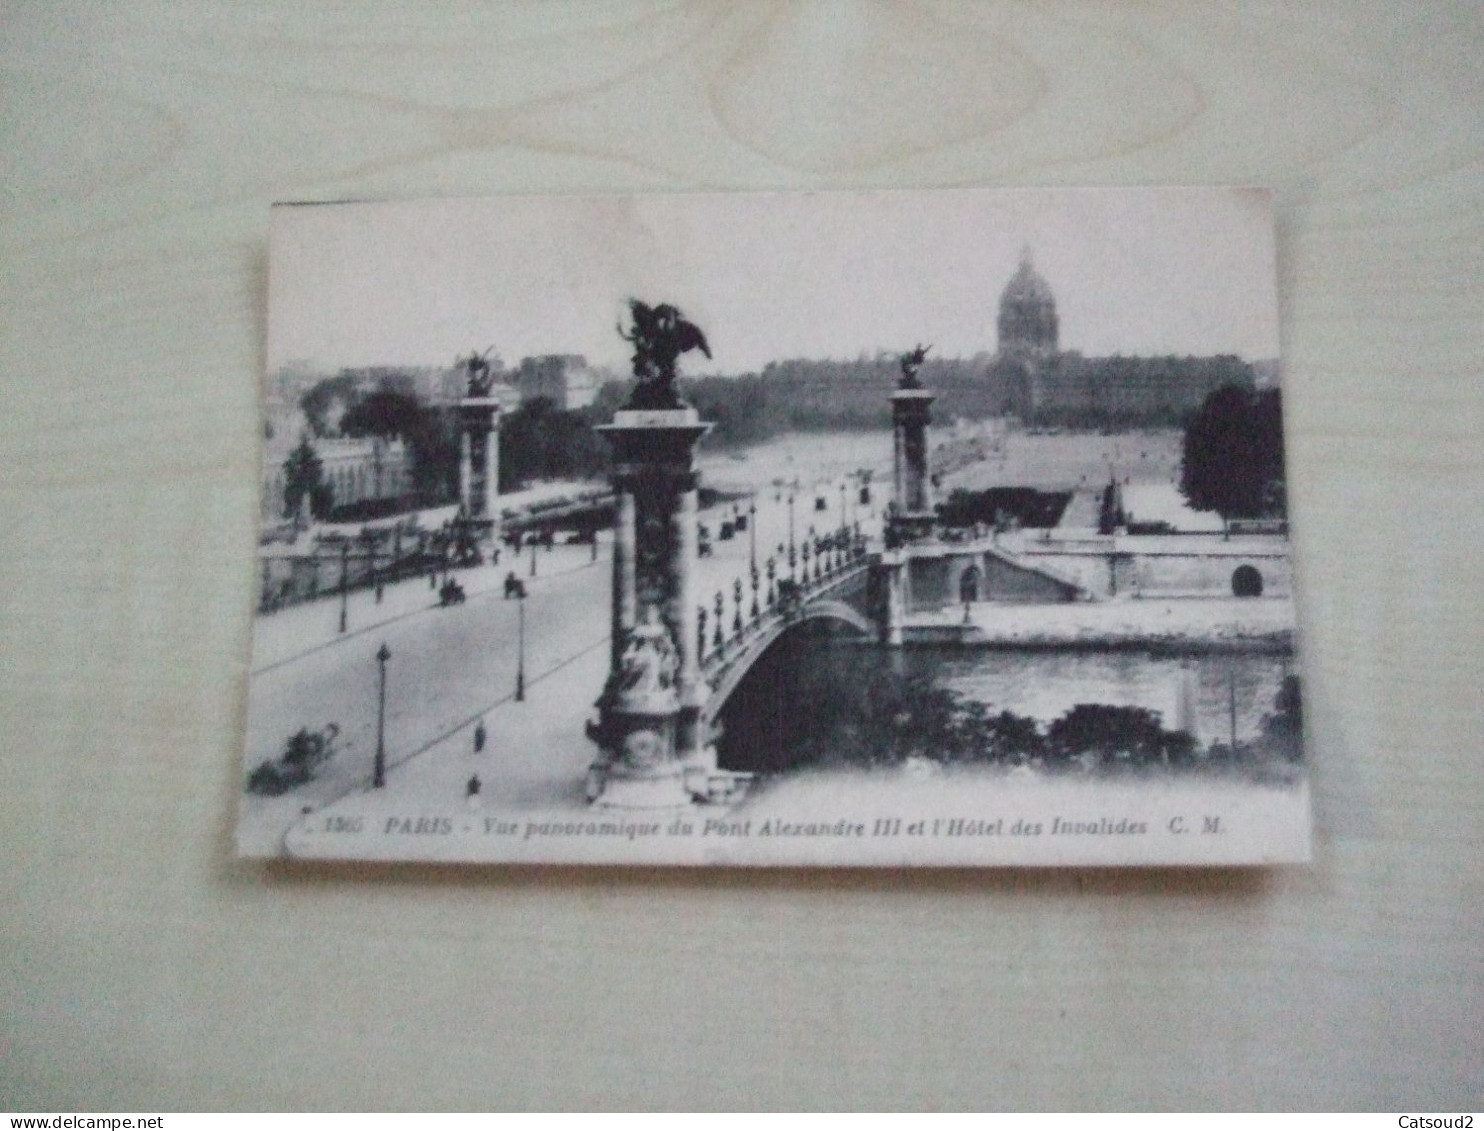 Carte Postale Ancienne PARIS Vue Panoramique Du Pont Alexandre III Et L'hôtel Des Invalides - The River Seine And Its Banks